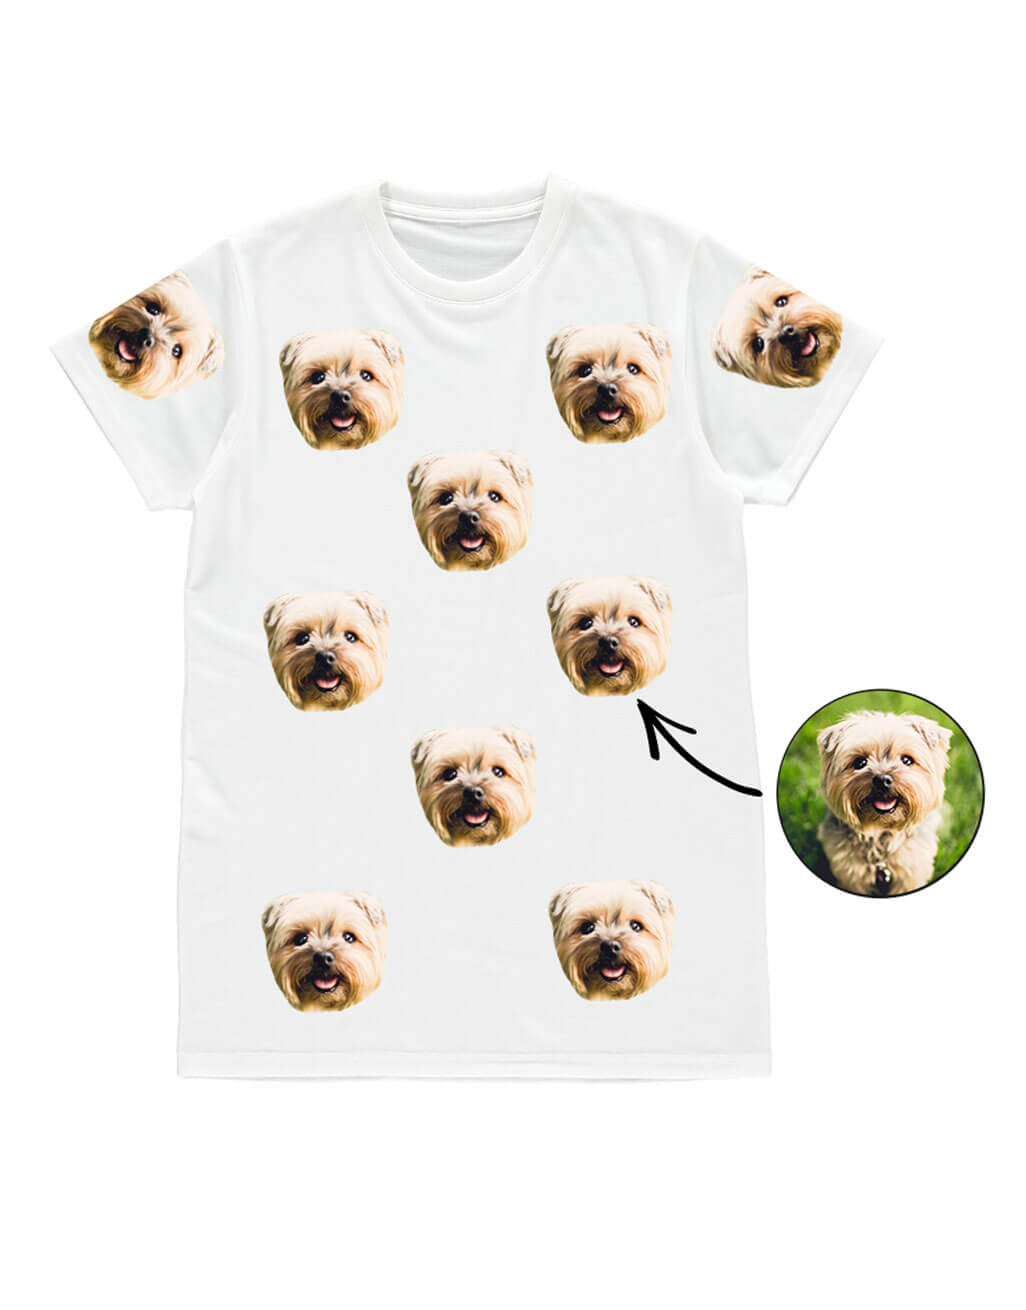 Your Dog Men's T-Shirt